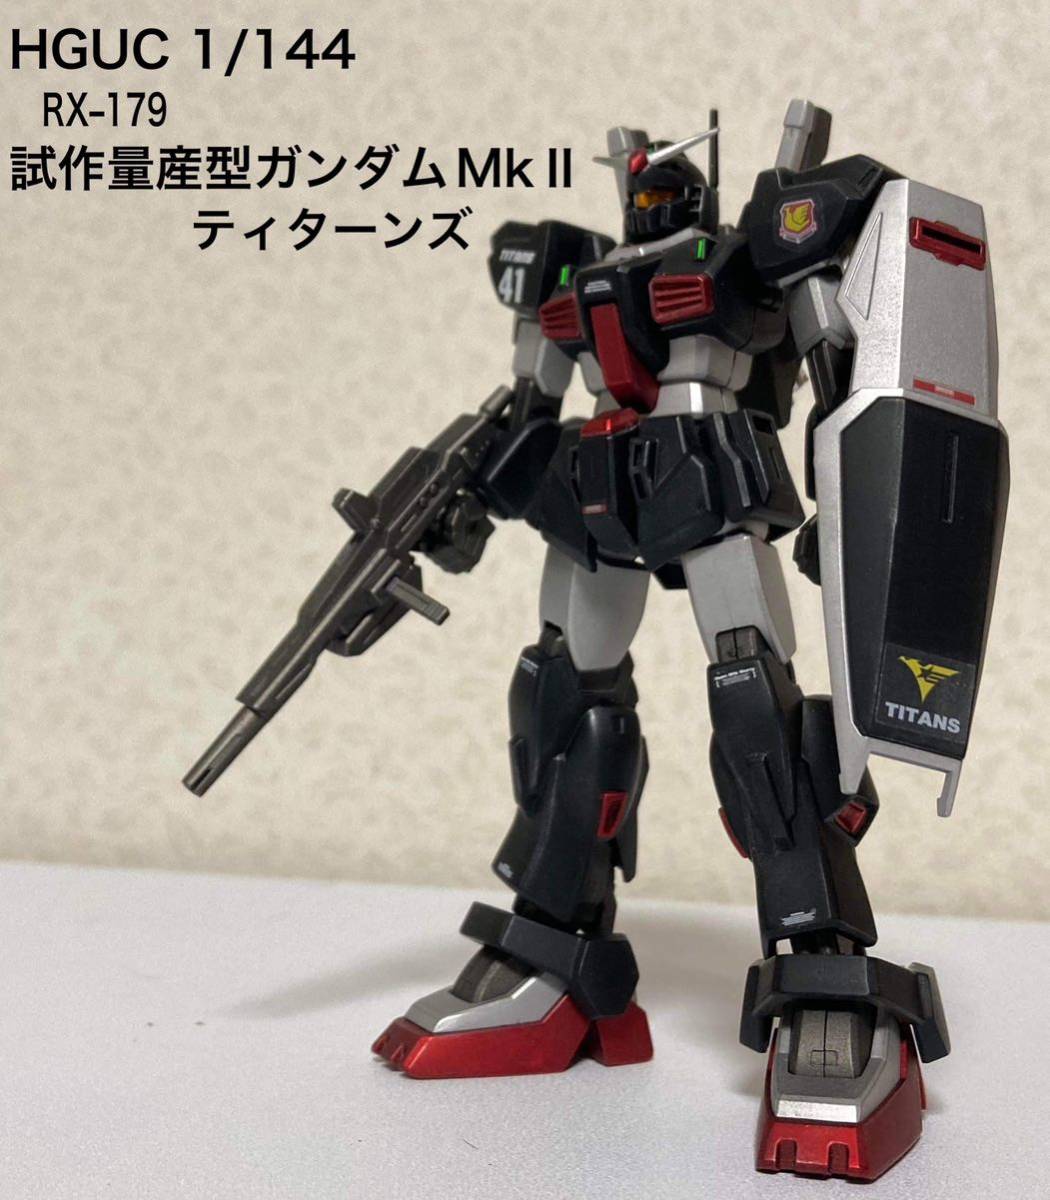 HGUC 1/144 RX-179 Prototype Gundam MkⅡ produit en série Produit fini entièrement peint, personnage, Gundam, Produit fini